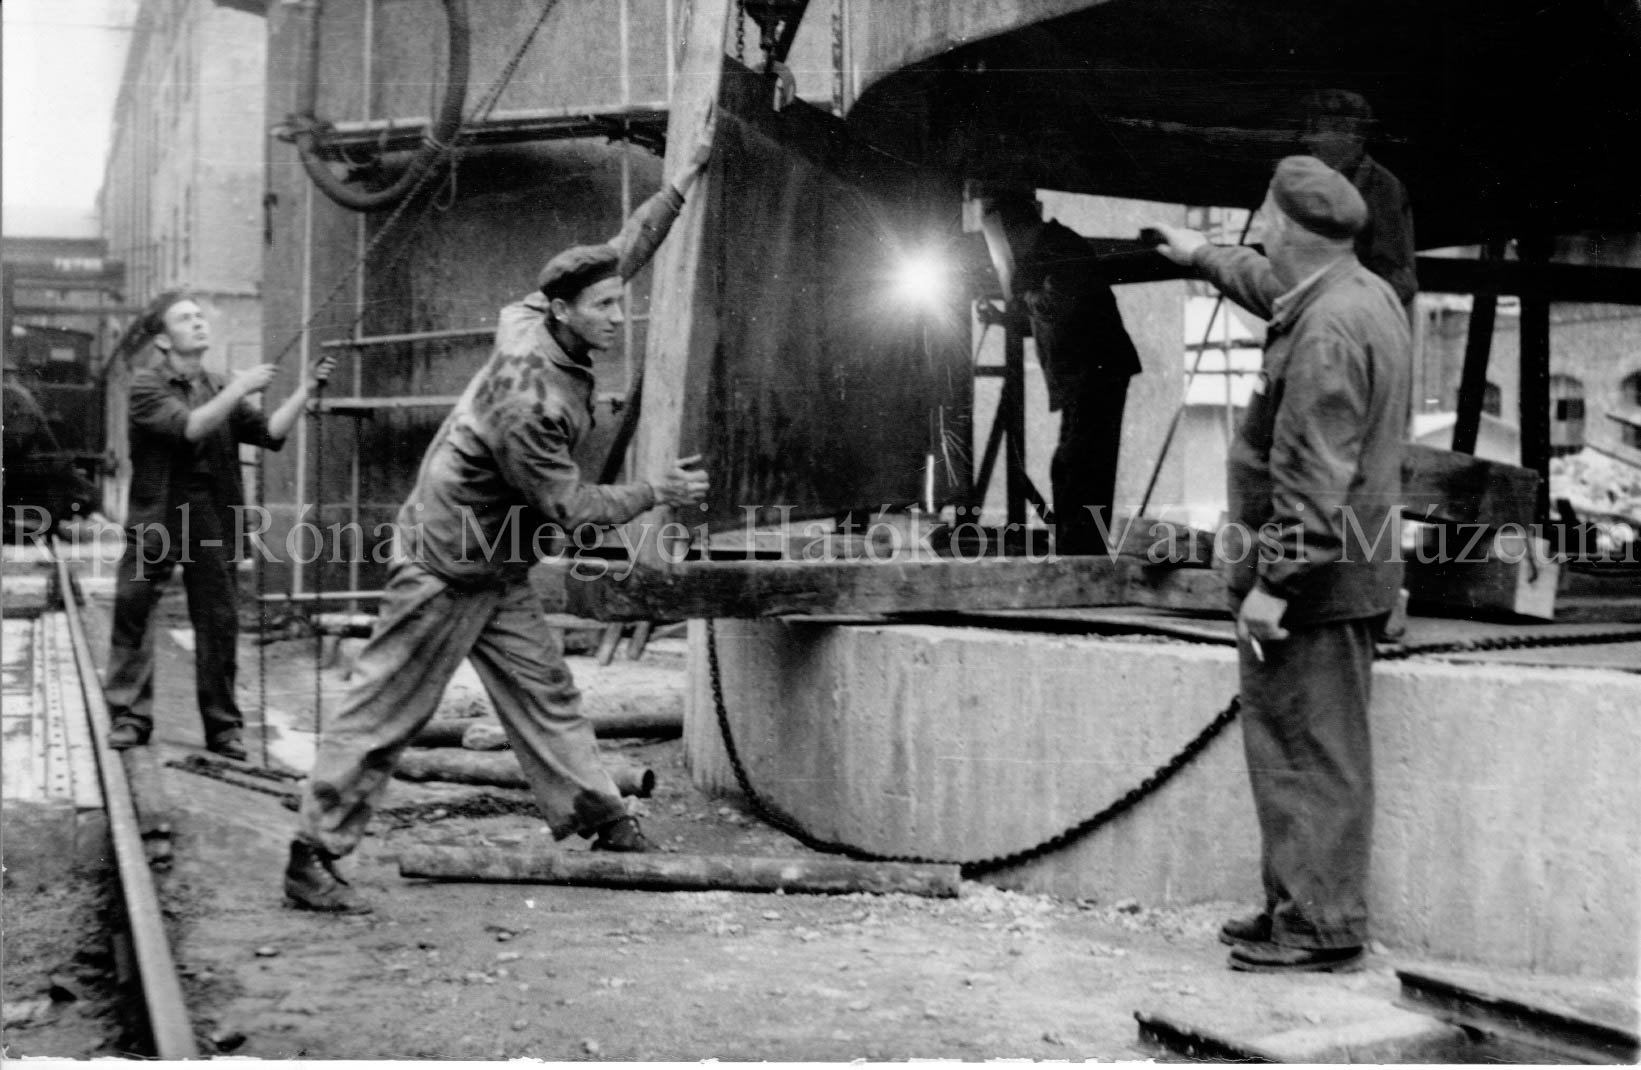 A kaposvári Cukorgyárban a műszakfejlesztési brigád melasztartályt épít (Rippl-Rónai Múzeum CC BY-NC-SA)